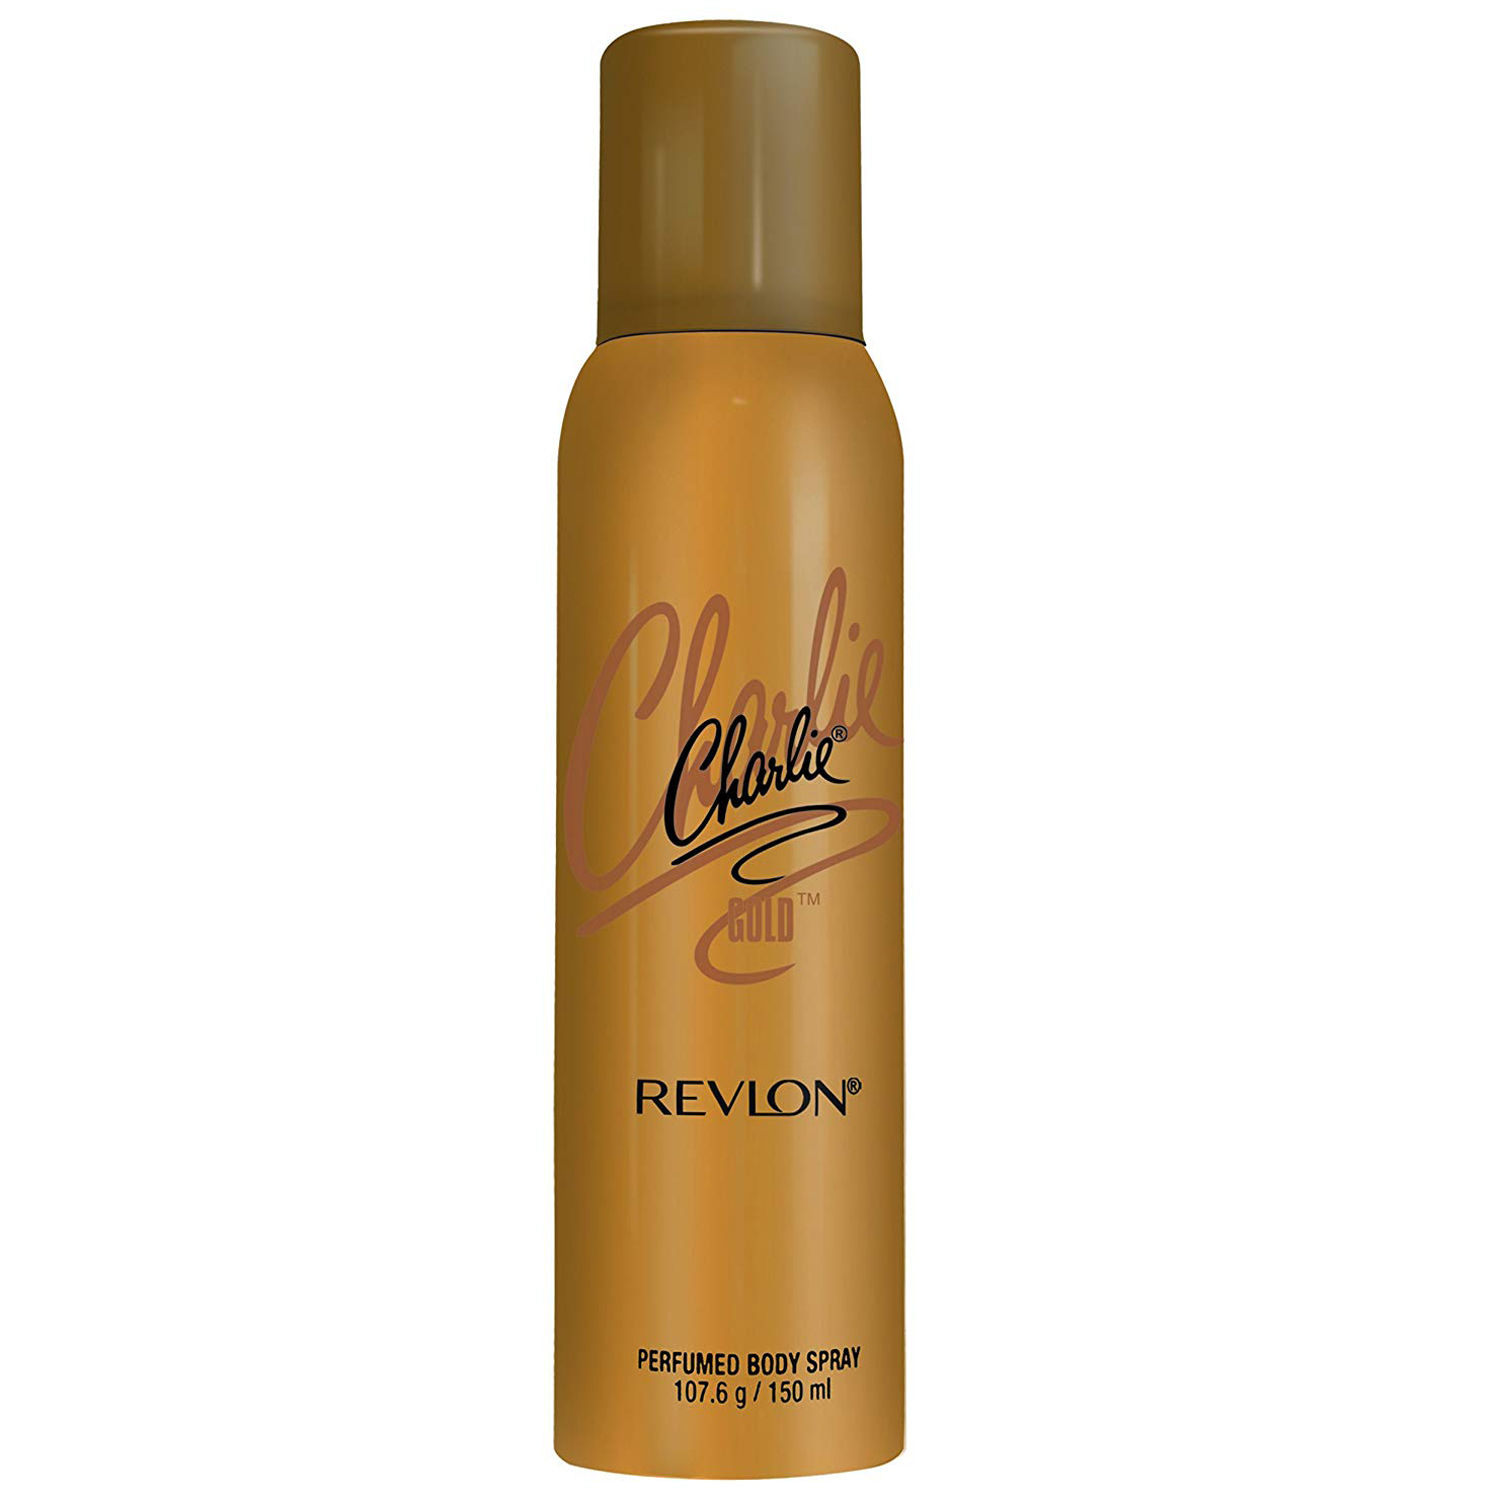 Revlon Charlie Gold Perfumed Body Spray, 150 ml, Pack of 1 